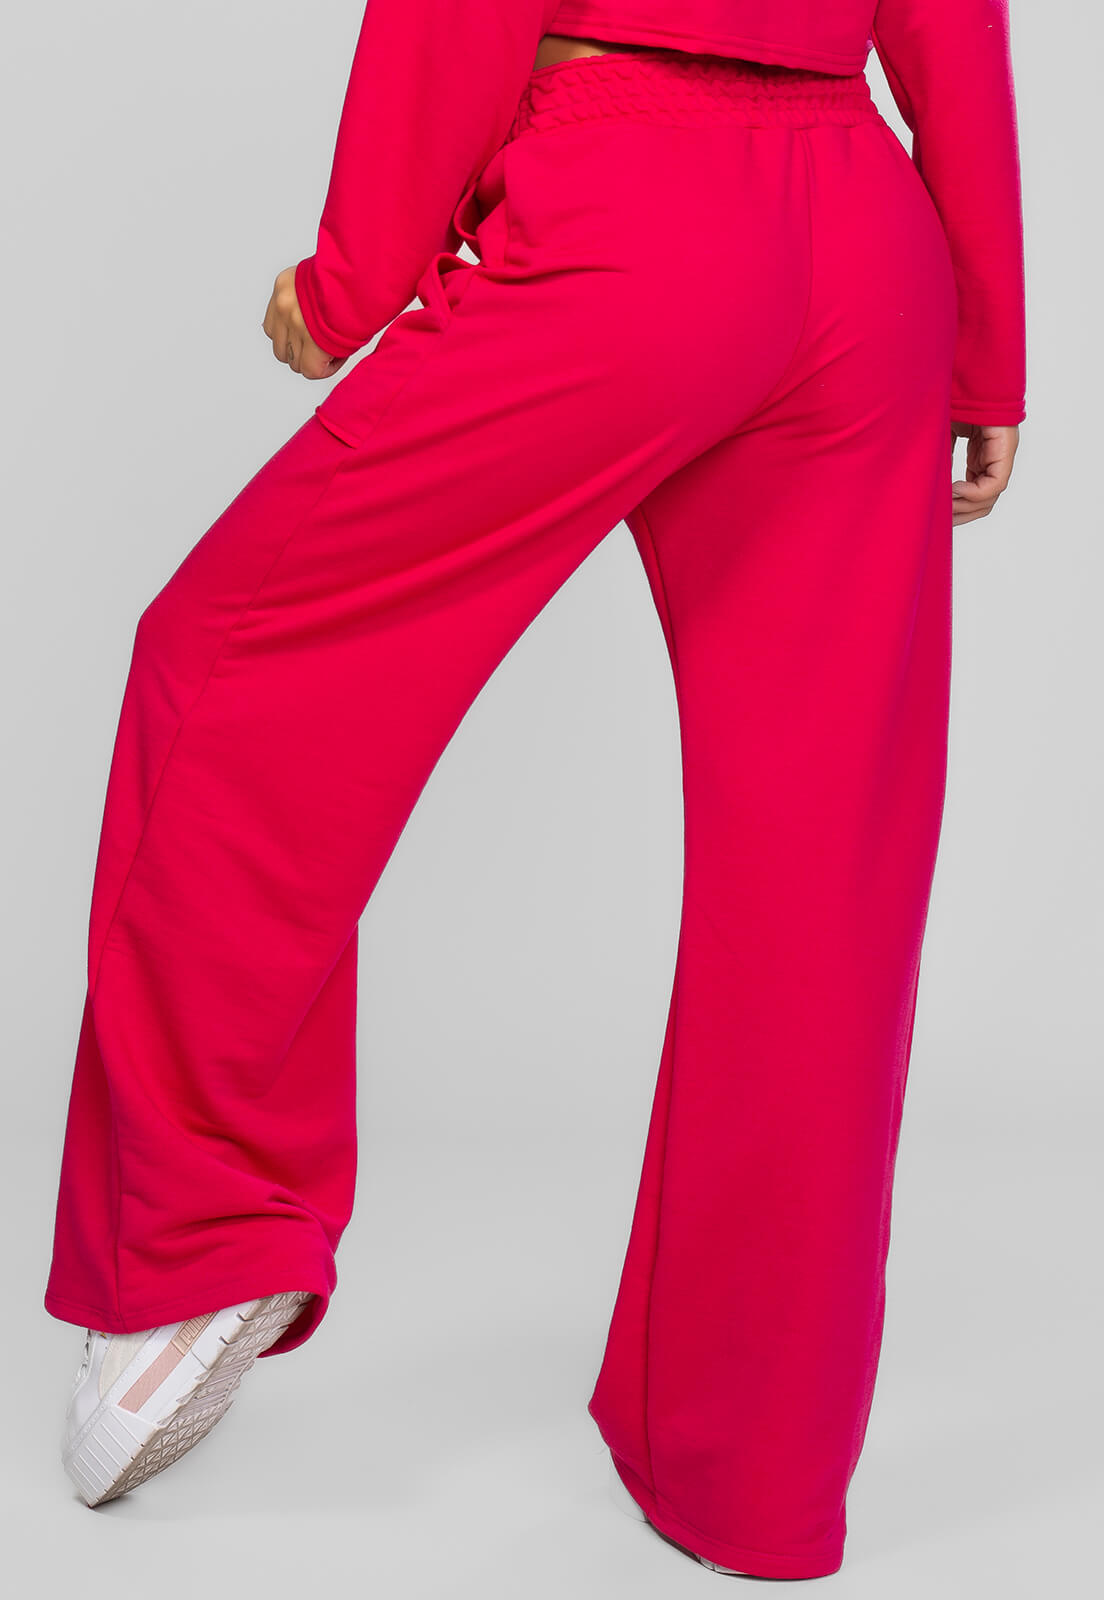 Calça Pantalona Moletinho Pink - Vicbela